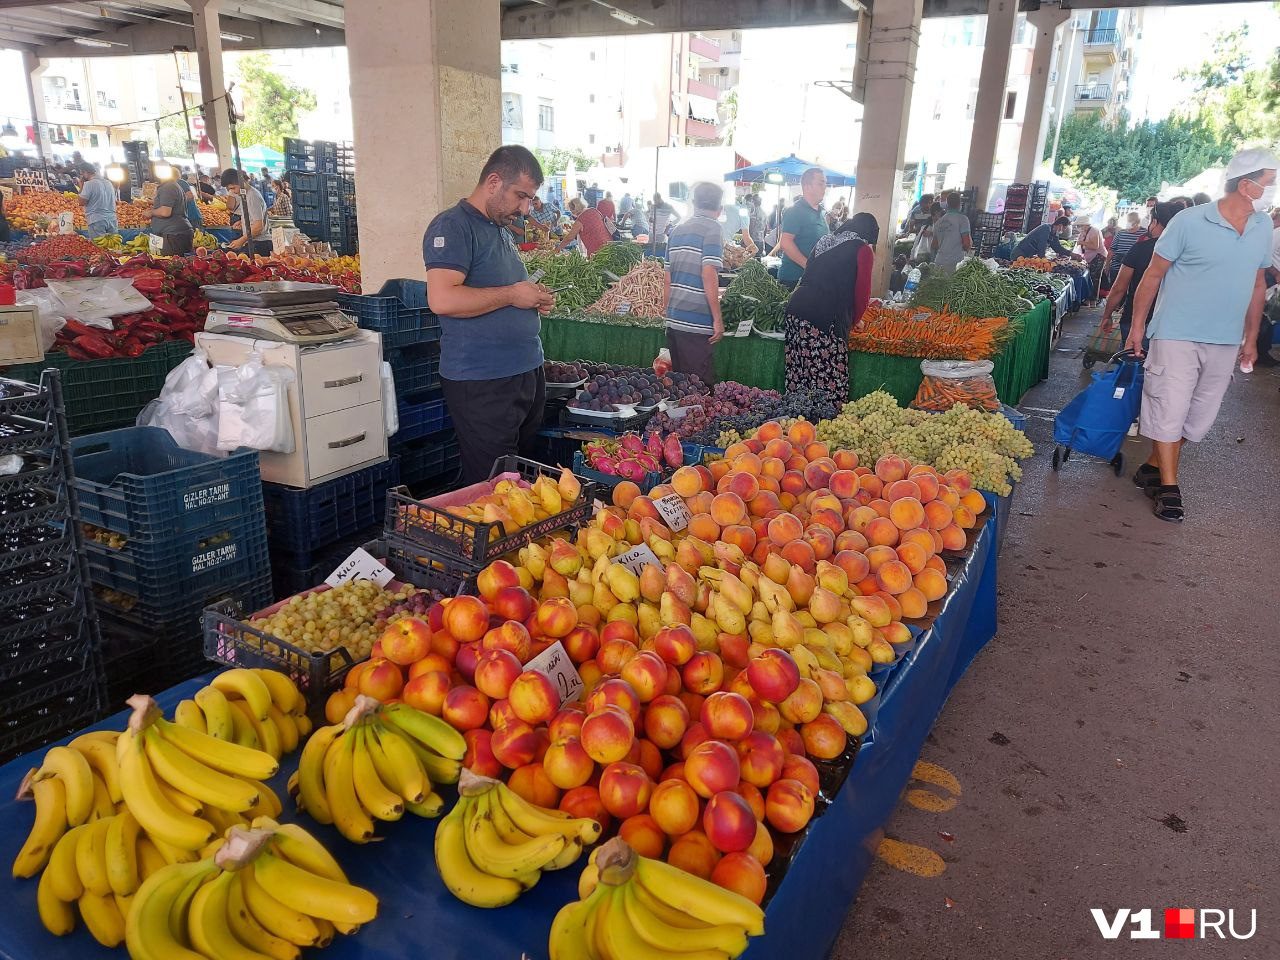 За свежими, недорогими и вкусными фруктами нужно идти на базар. Они разворачиваются раз в неделю в каждом районе Антальи